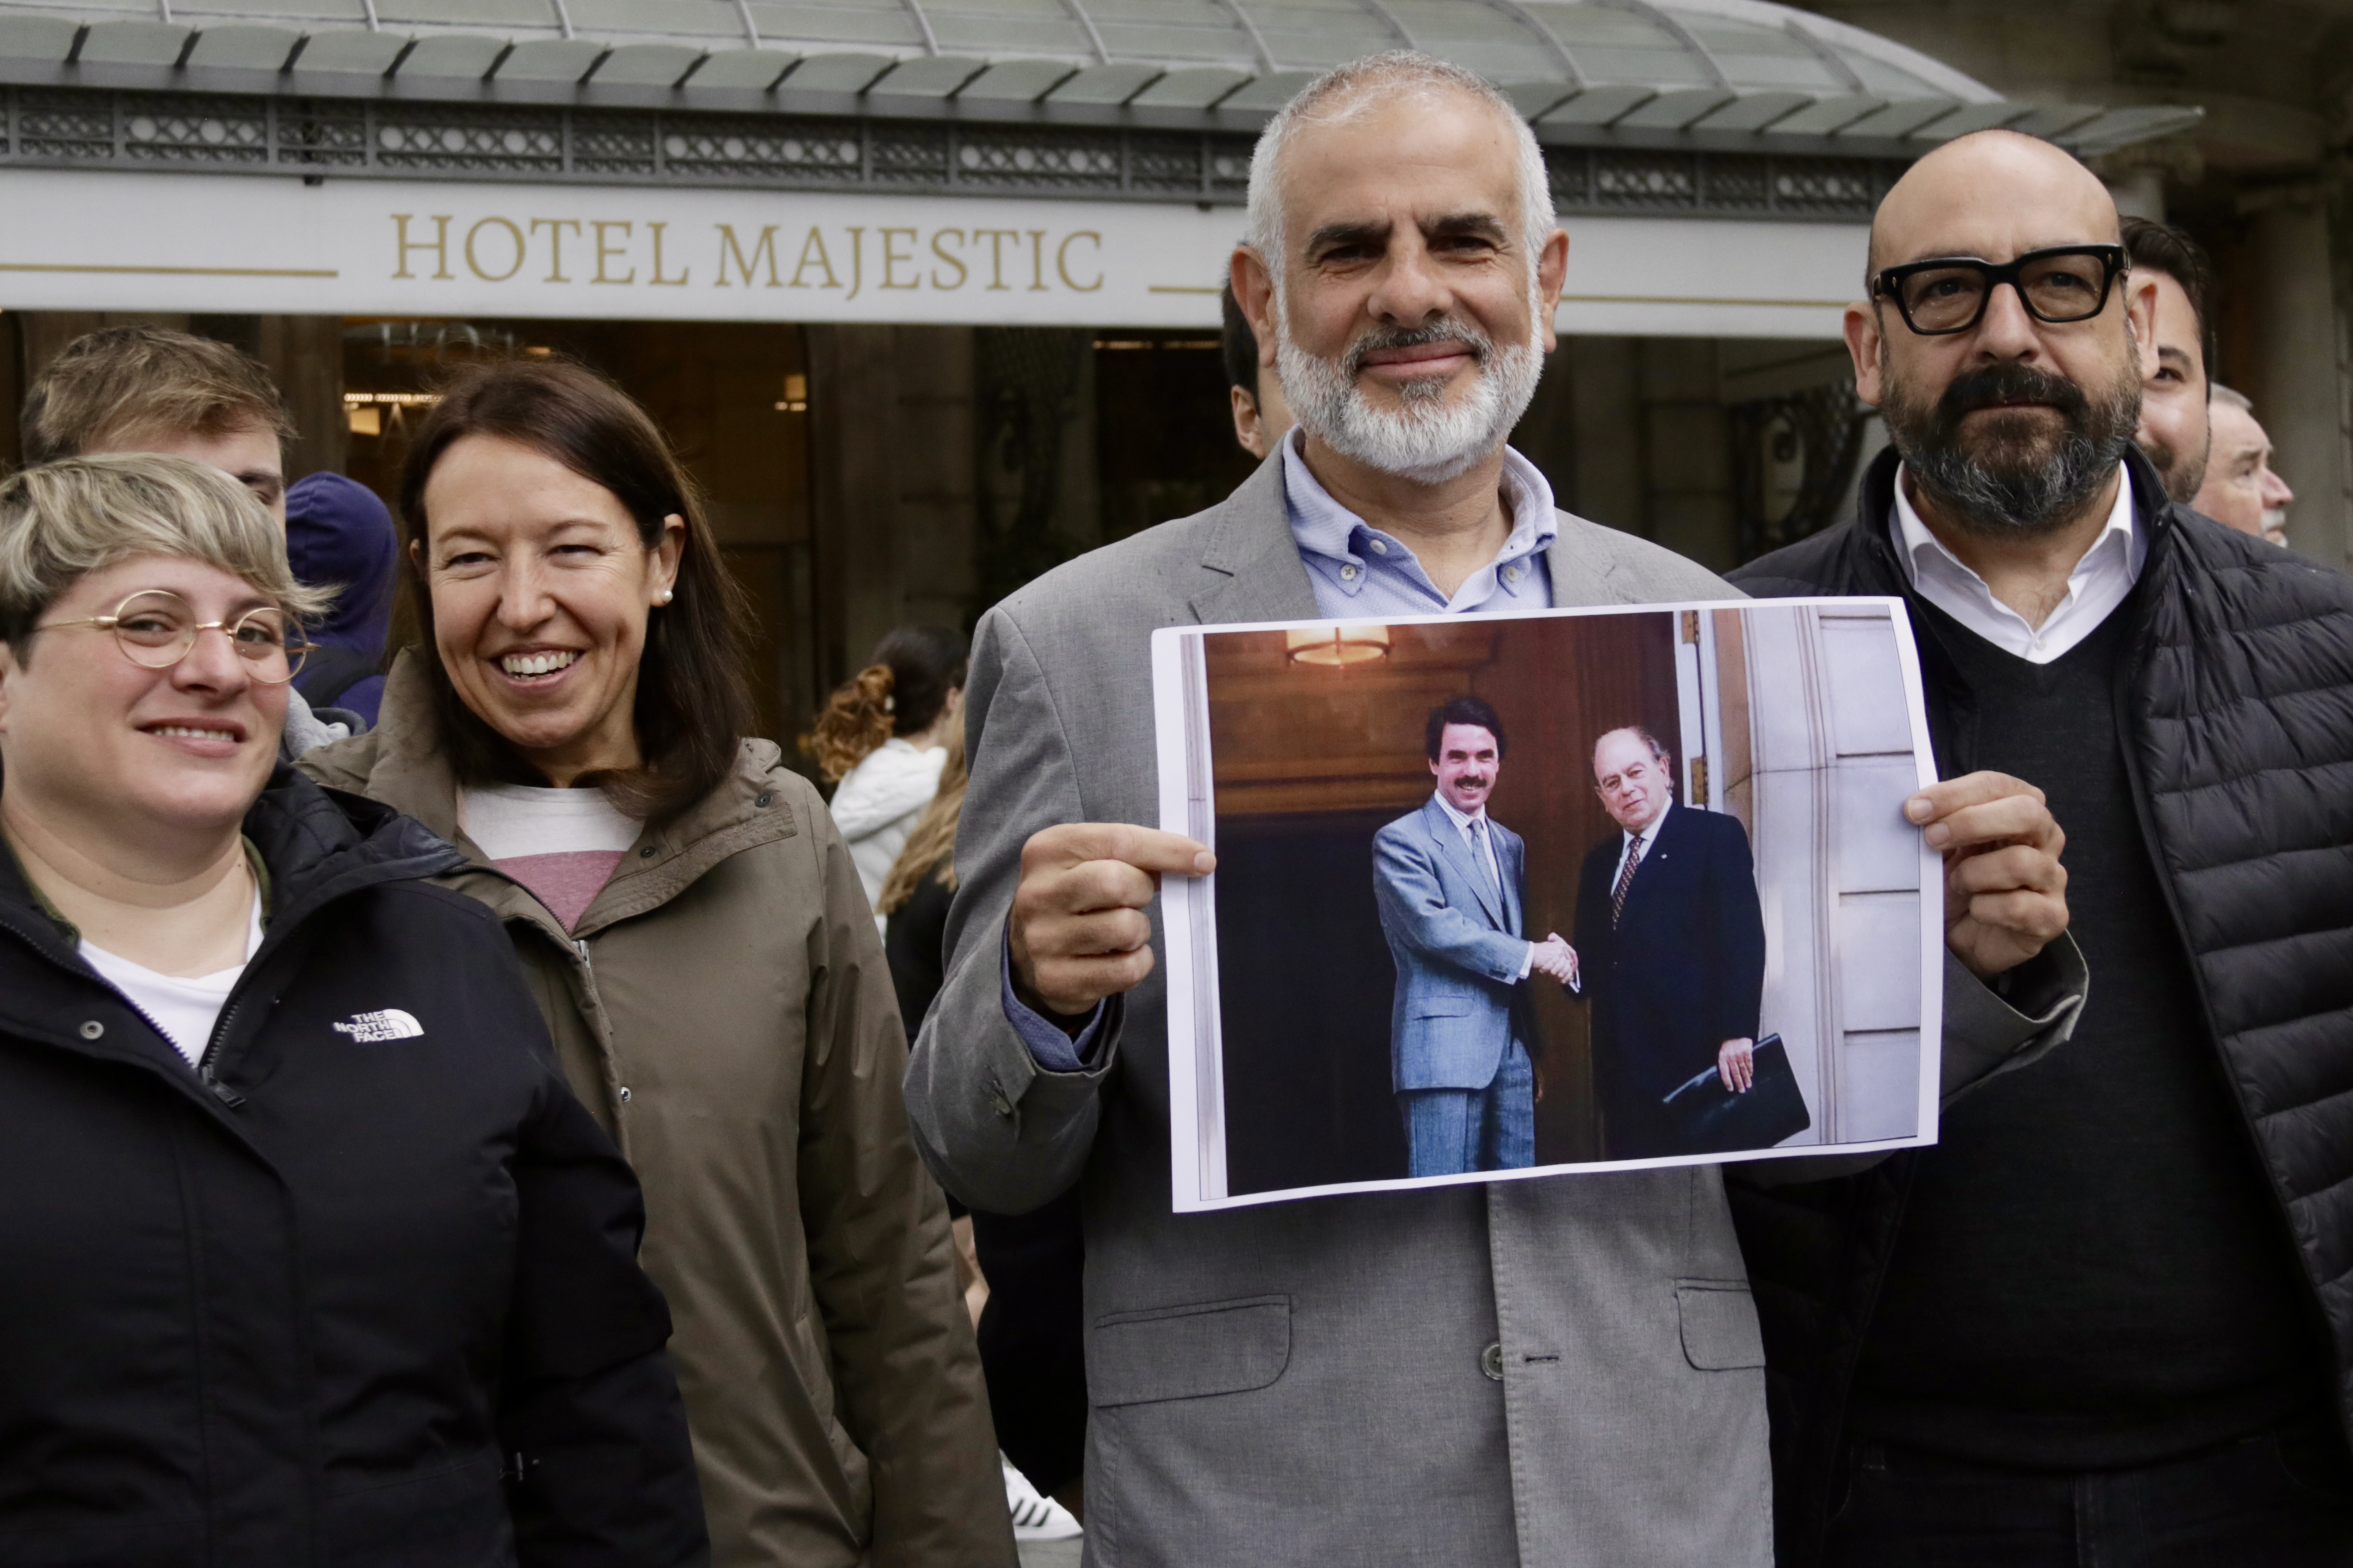 El candidat de Cs, Carlos Carrizosa, amb la imatge del pacte del Majestic, davant l'hotel barceloní, per denunciar els acords del PP amb el nacionalism